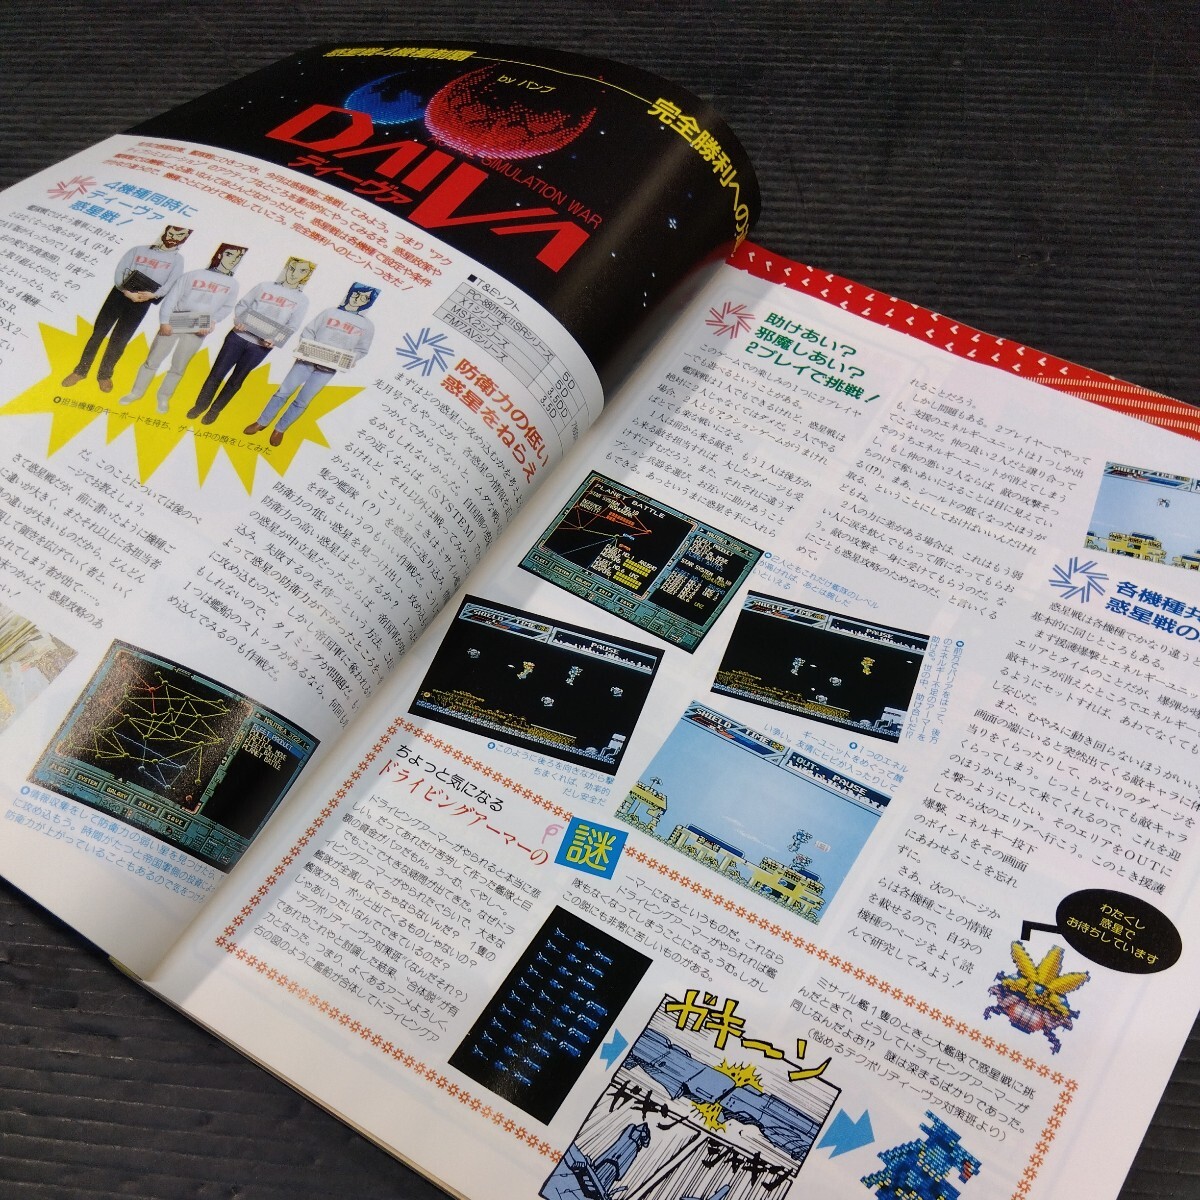 テクノポリス 1987年5月号 徳間書店 PCゲーム雑誌 貴重 月刊 ゲーム 情報誌 レトロ本 シミュレーションゲーム超特集 PC-88 MSX2 ポケコン